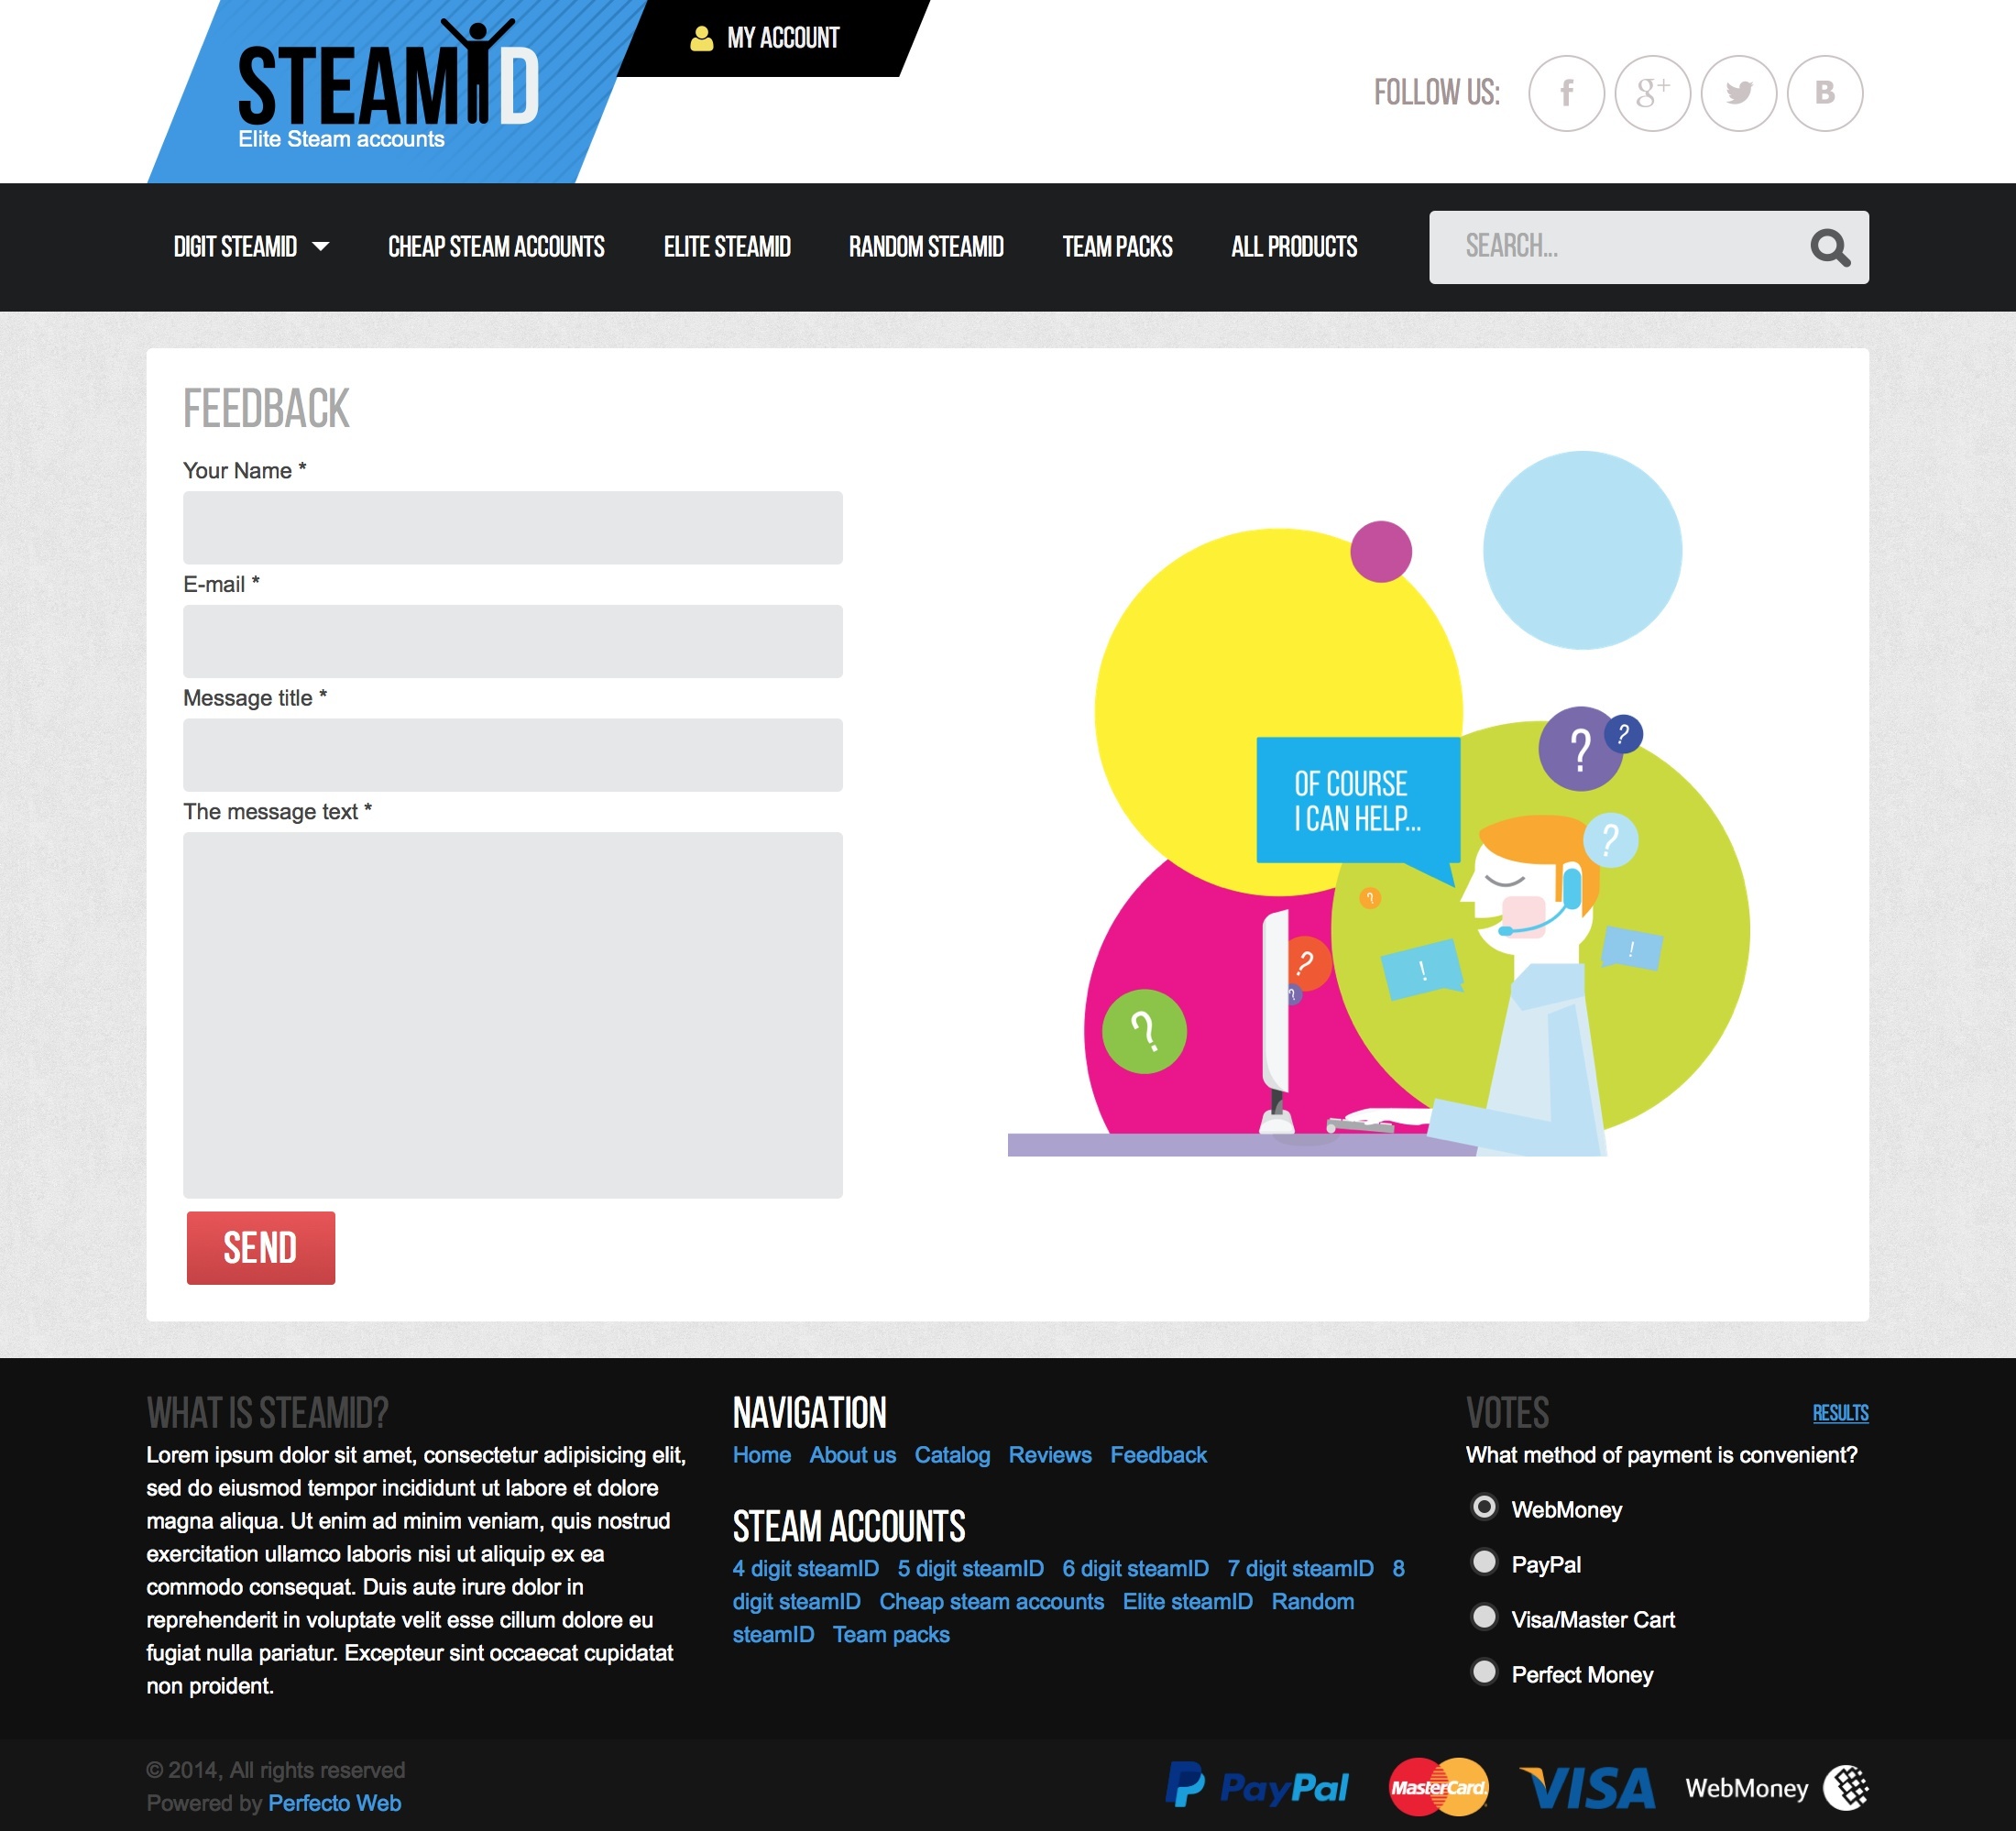 Steam Keys - Selling 3-8 digit steam accounts №4- Feedback form